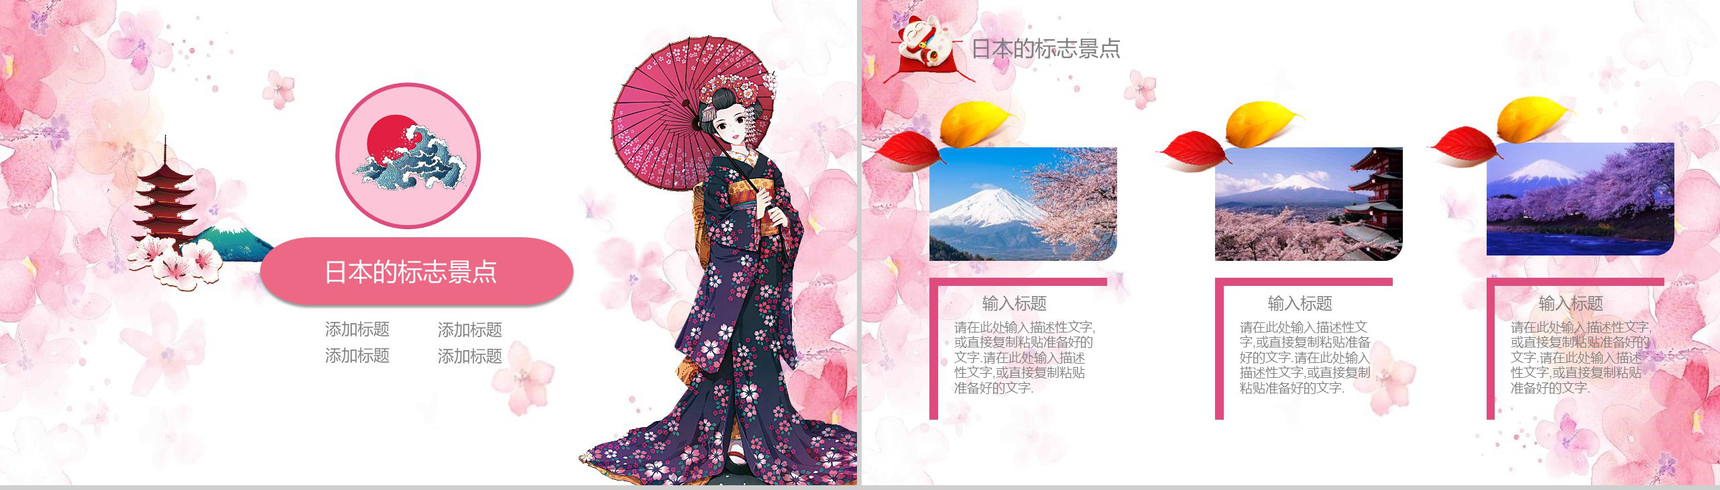 粉色日系和风日本文化介绍PPT模板-14